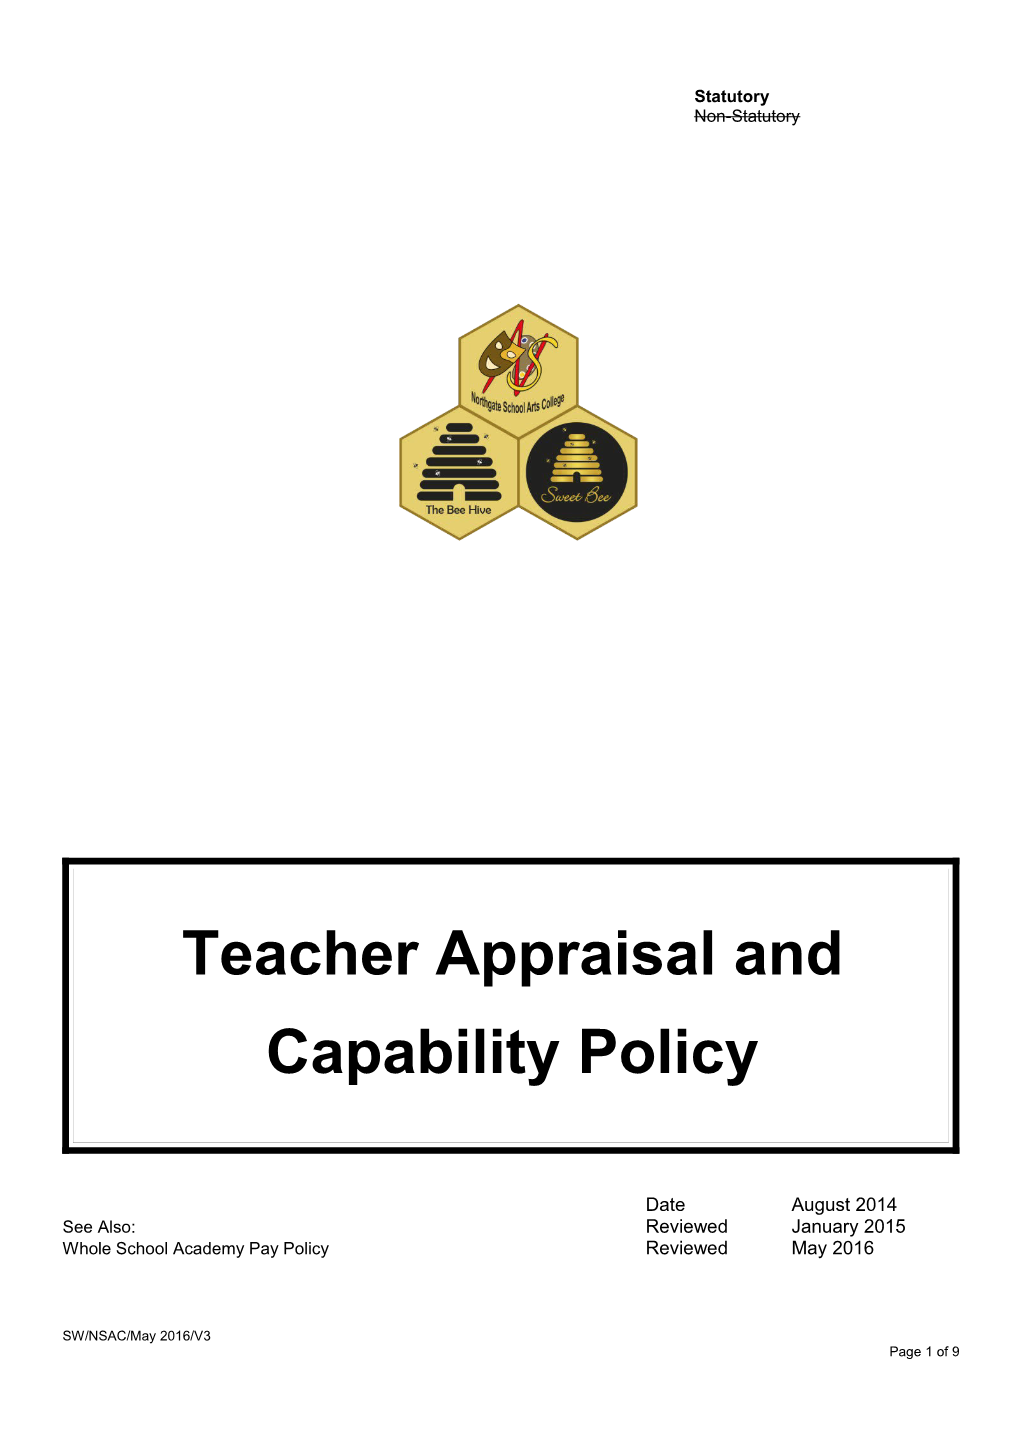 Teacher Appraisal And